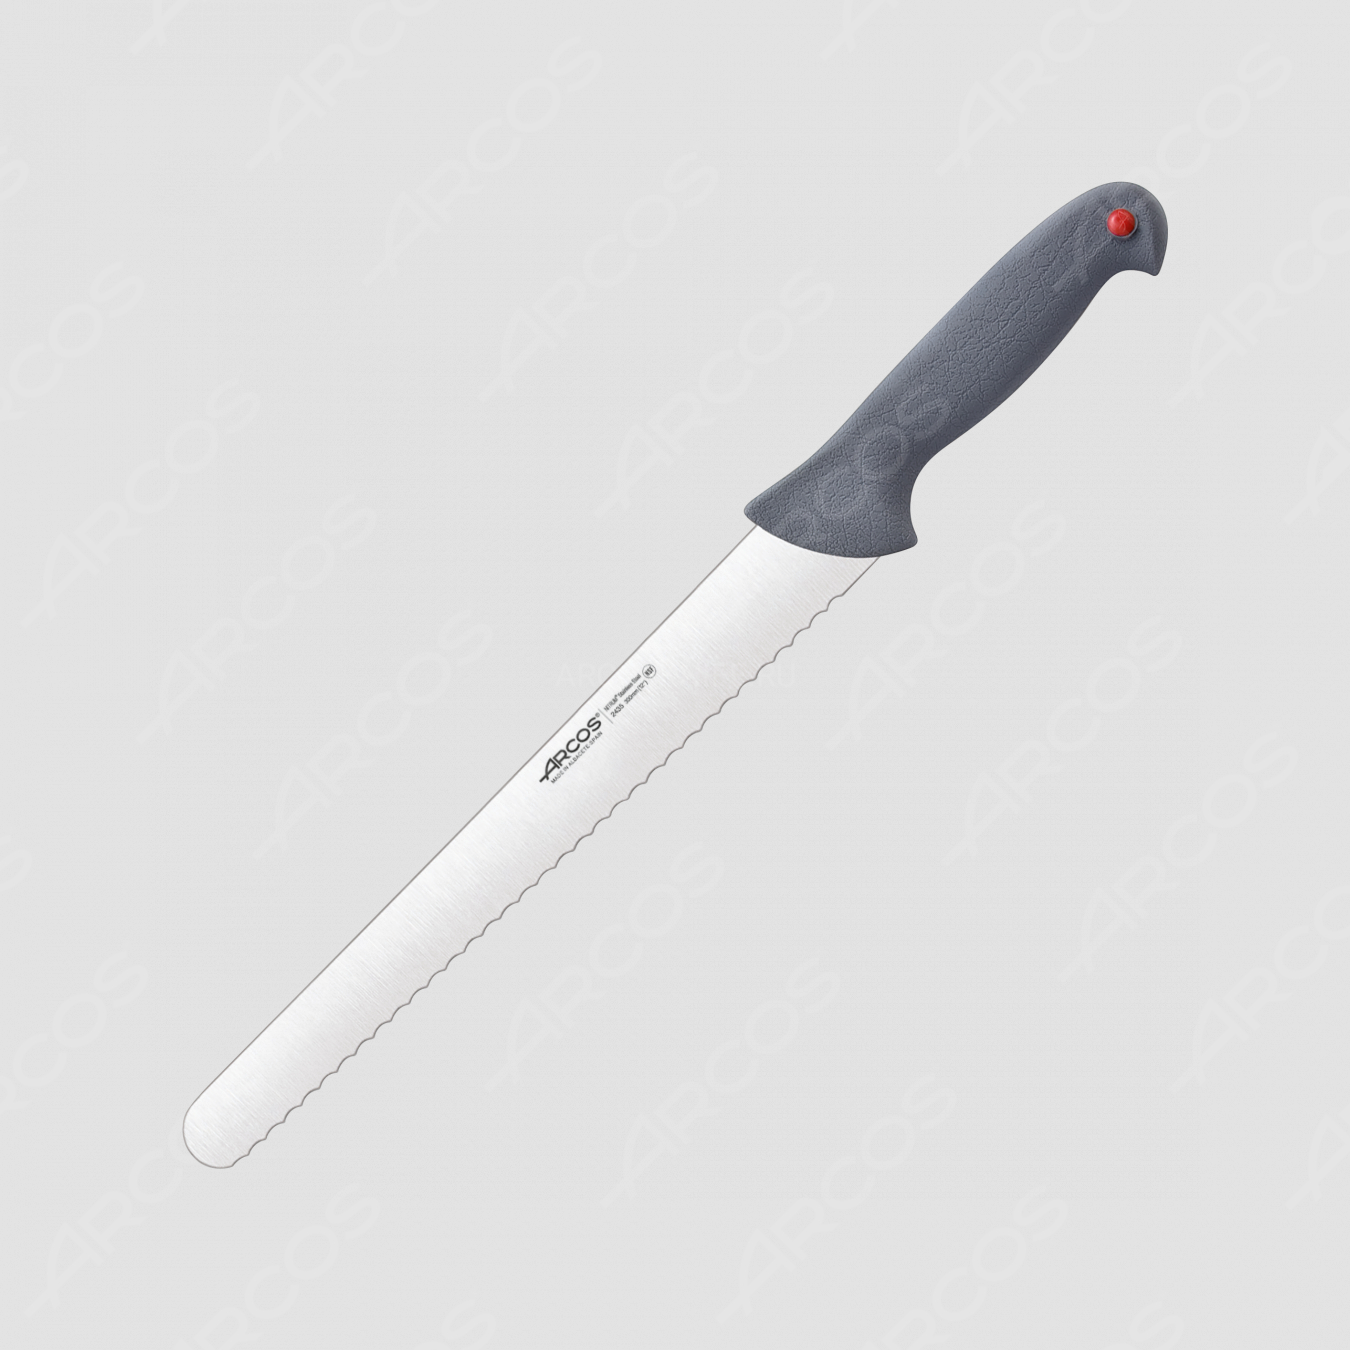 Нож кухонный для кондитерских изделий 30 см, серия Colour-prof, ARCOS, Испания